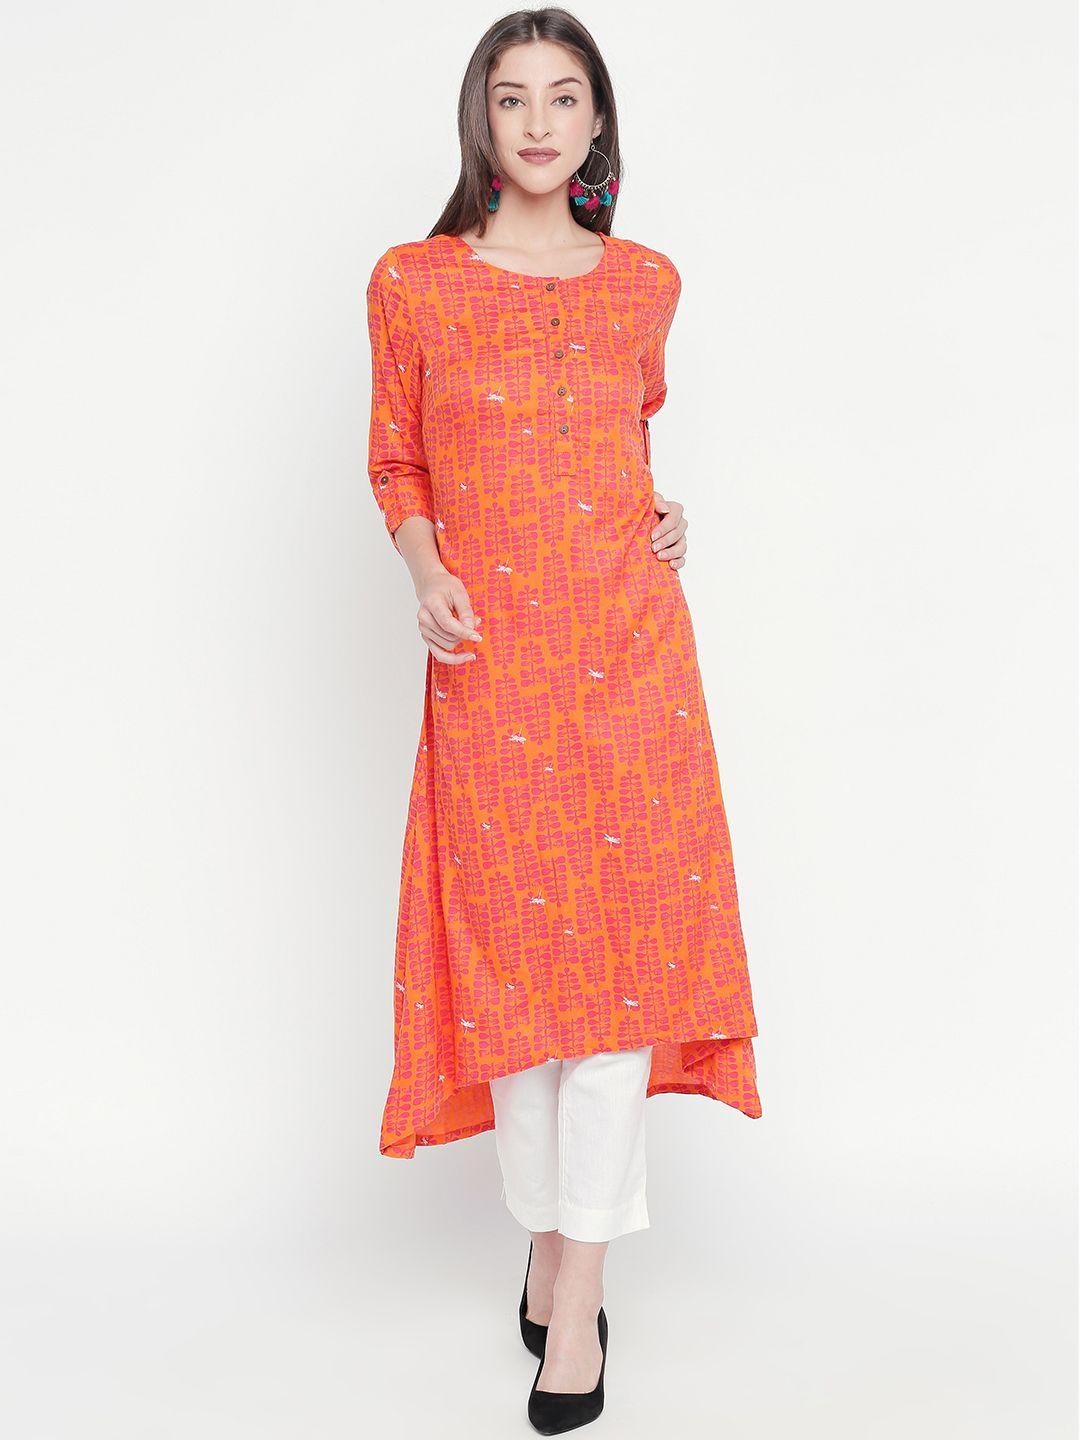 rangmanch by pantaloons women orange printed asymmetric a-line kurta